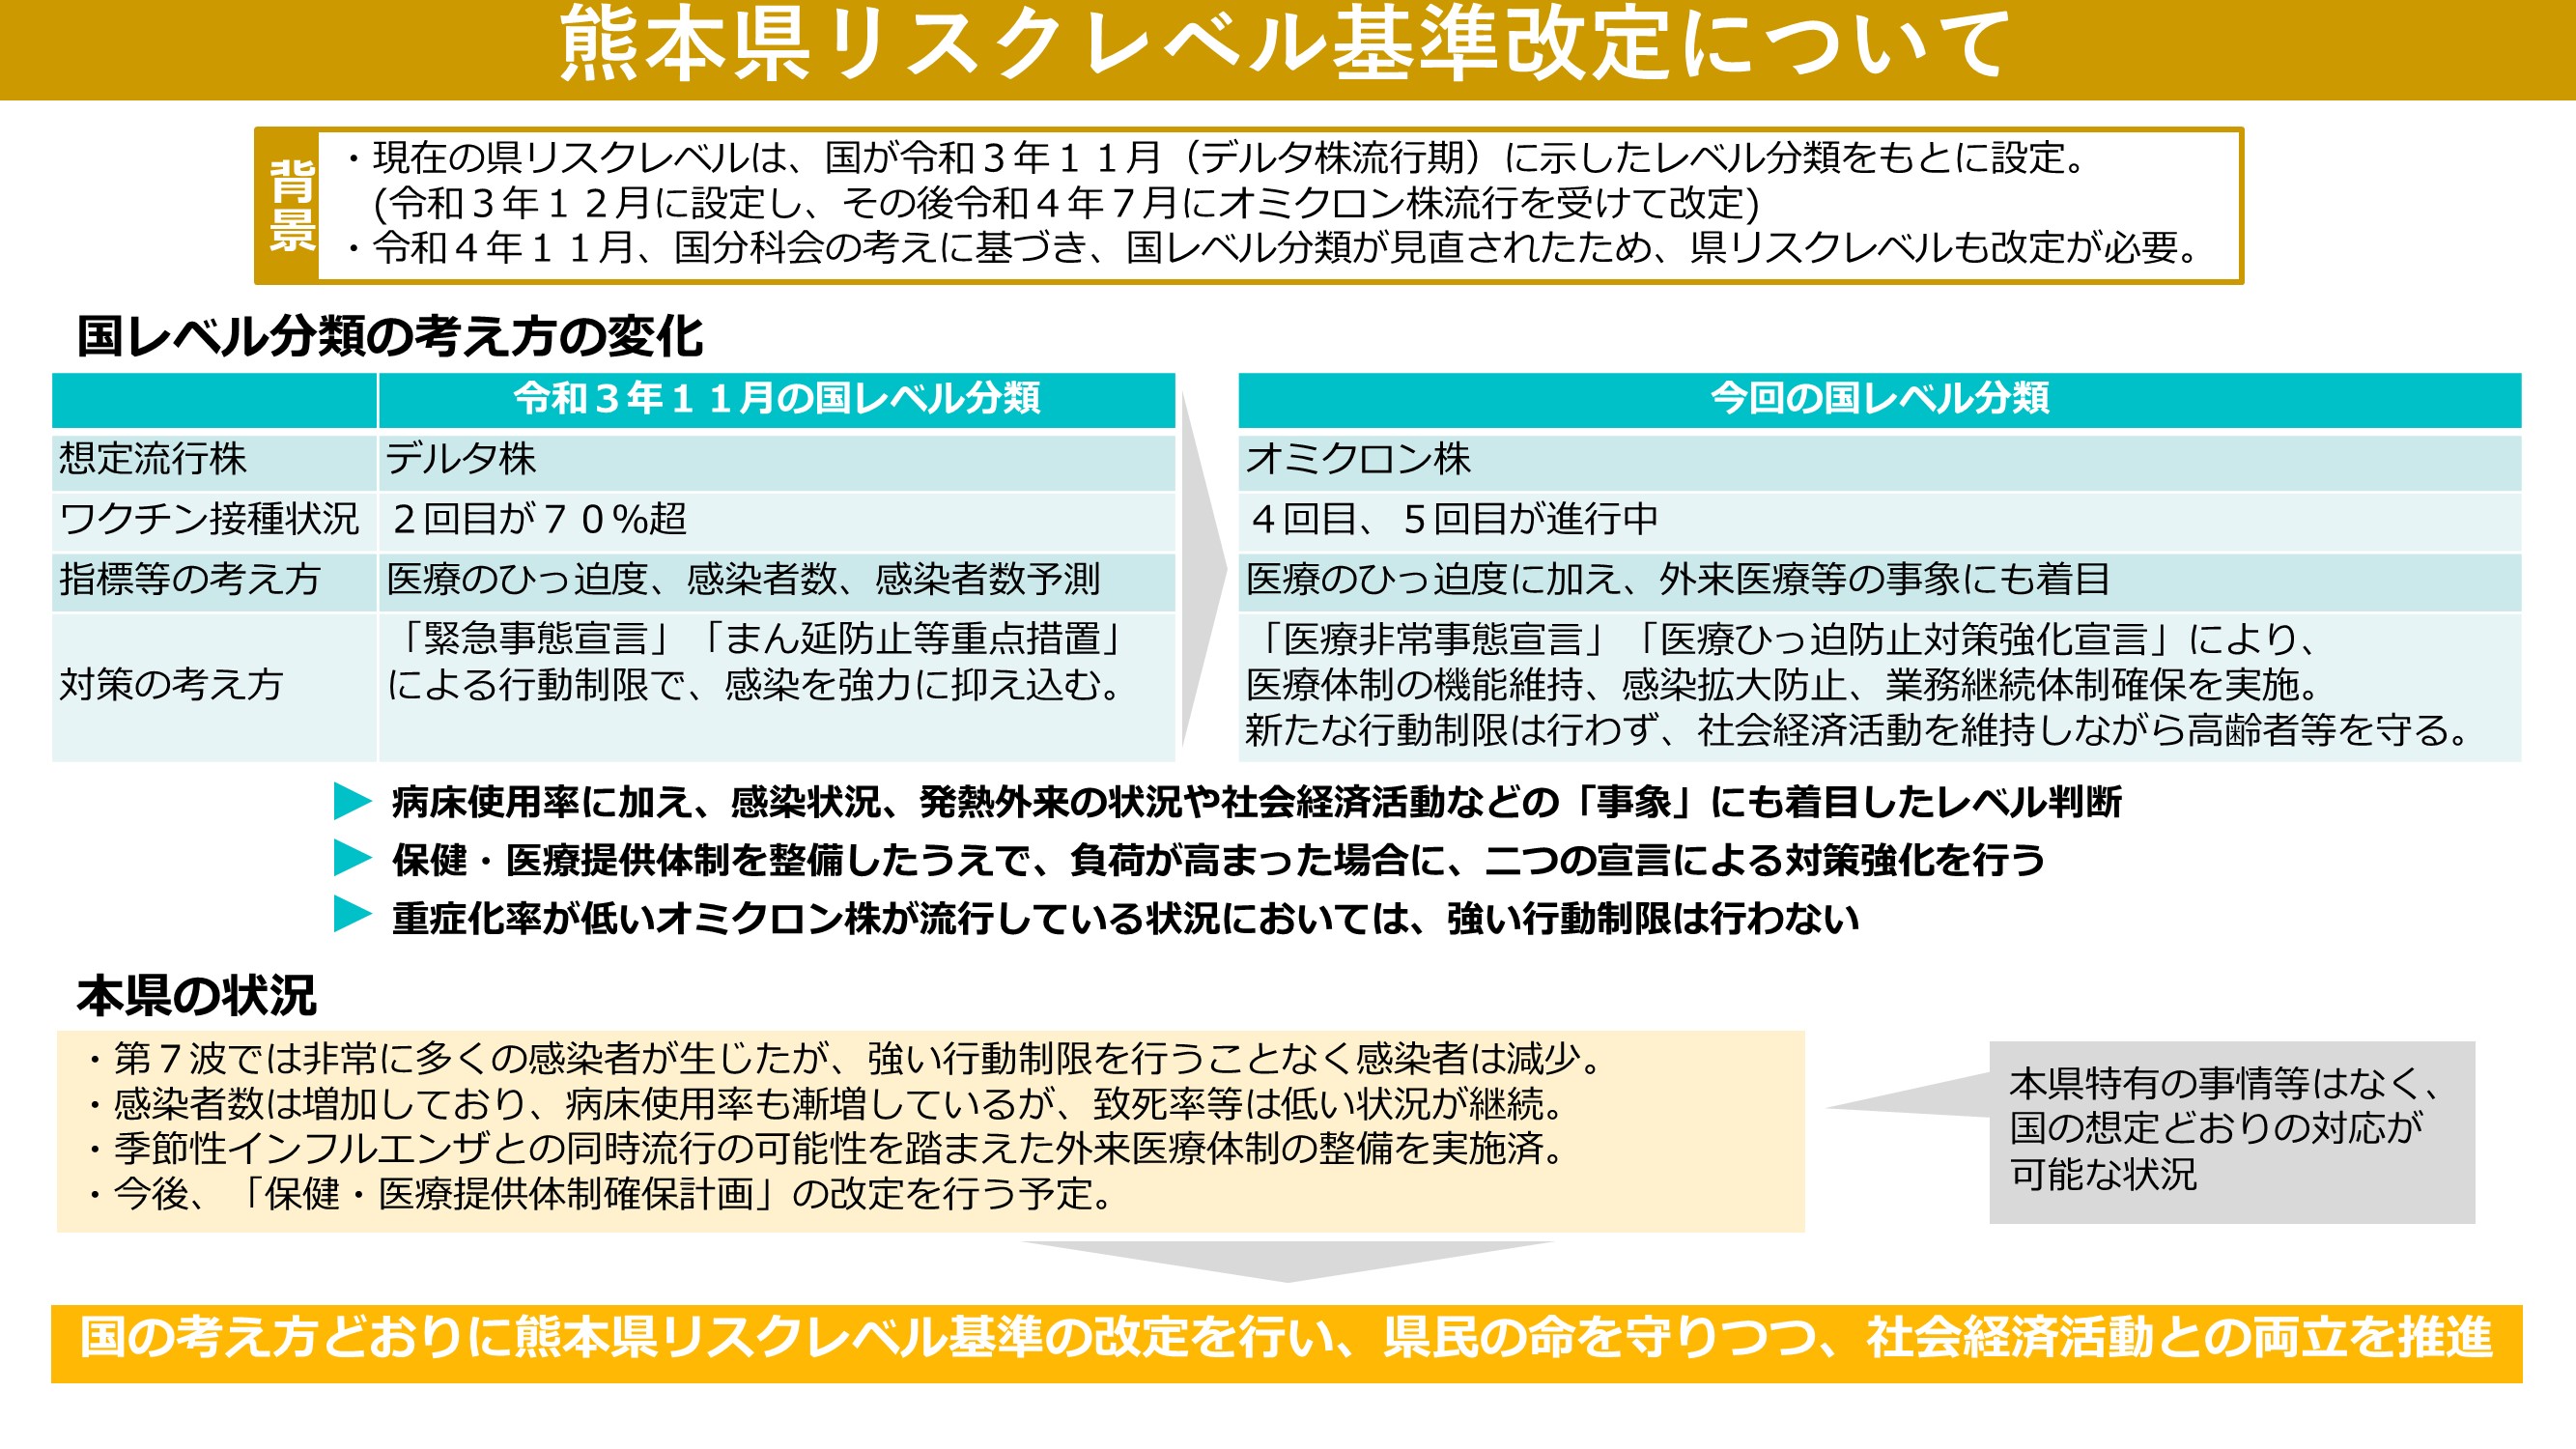 熊本県リスクレベル基準改定について（画像１）